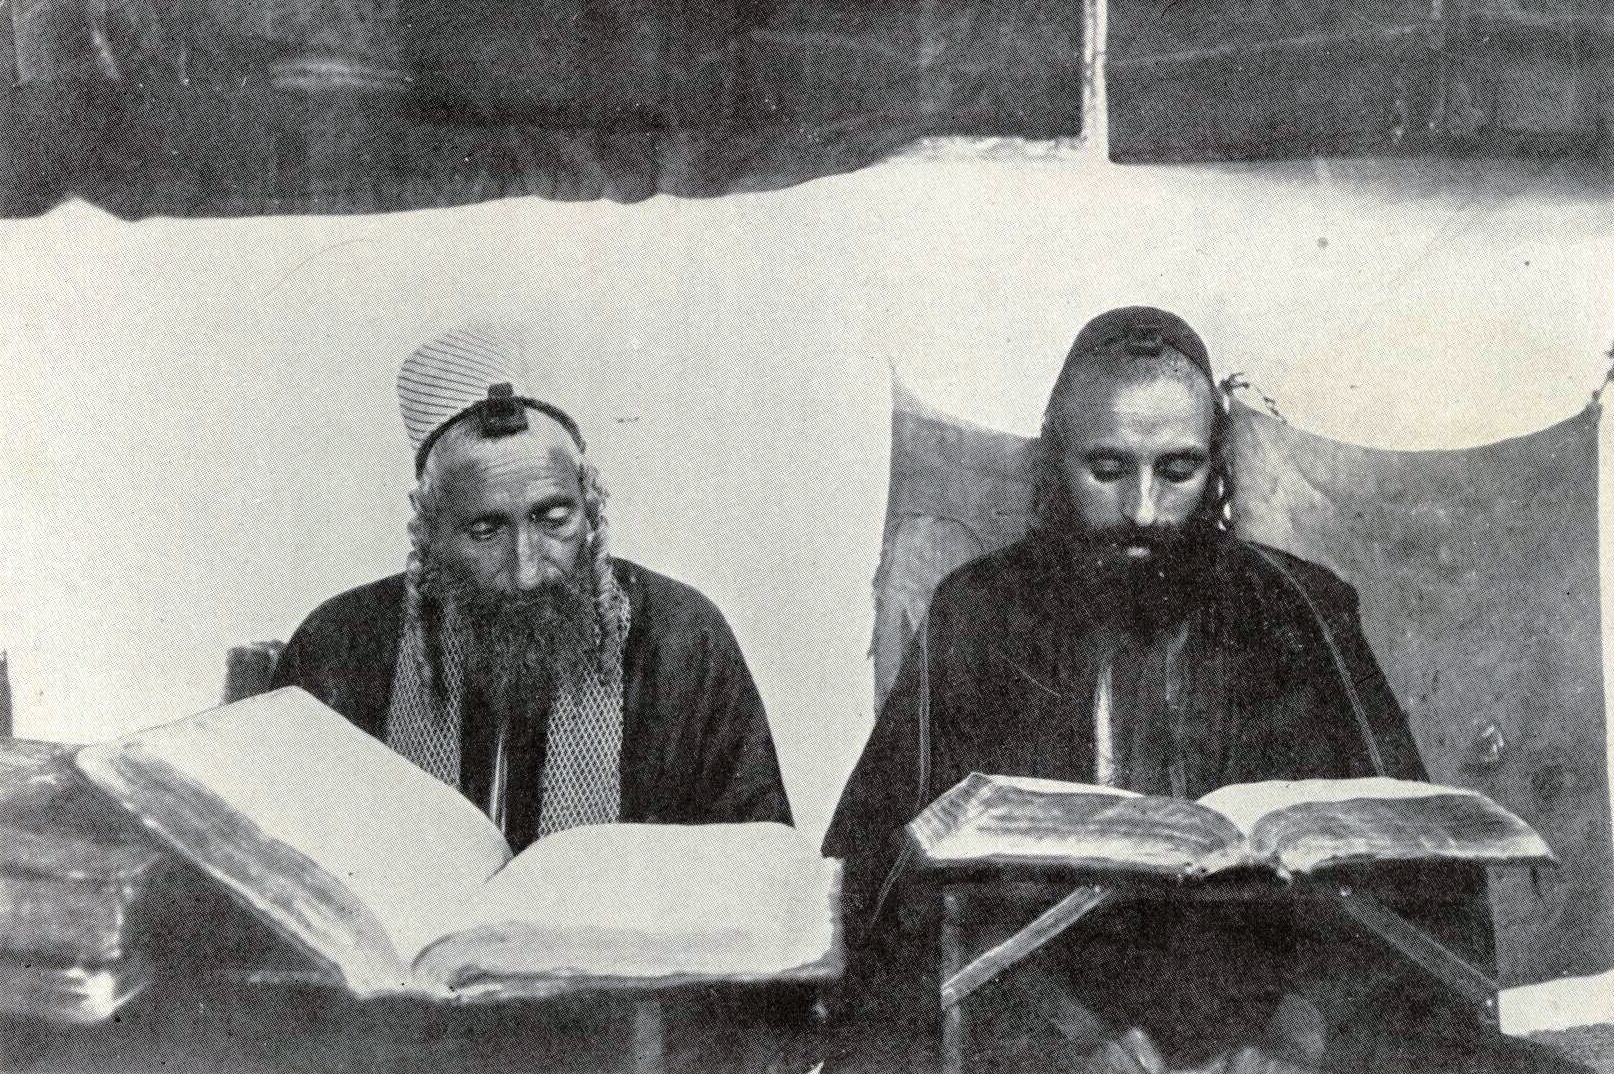  Jews of Sanaa in 1907 (c) Hermann Burkhardt